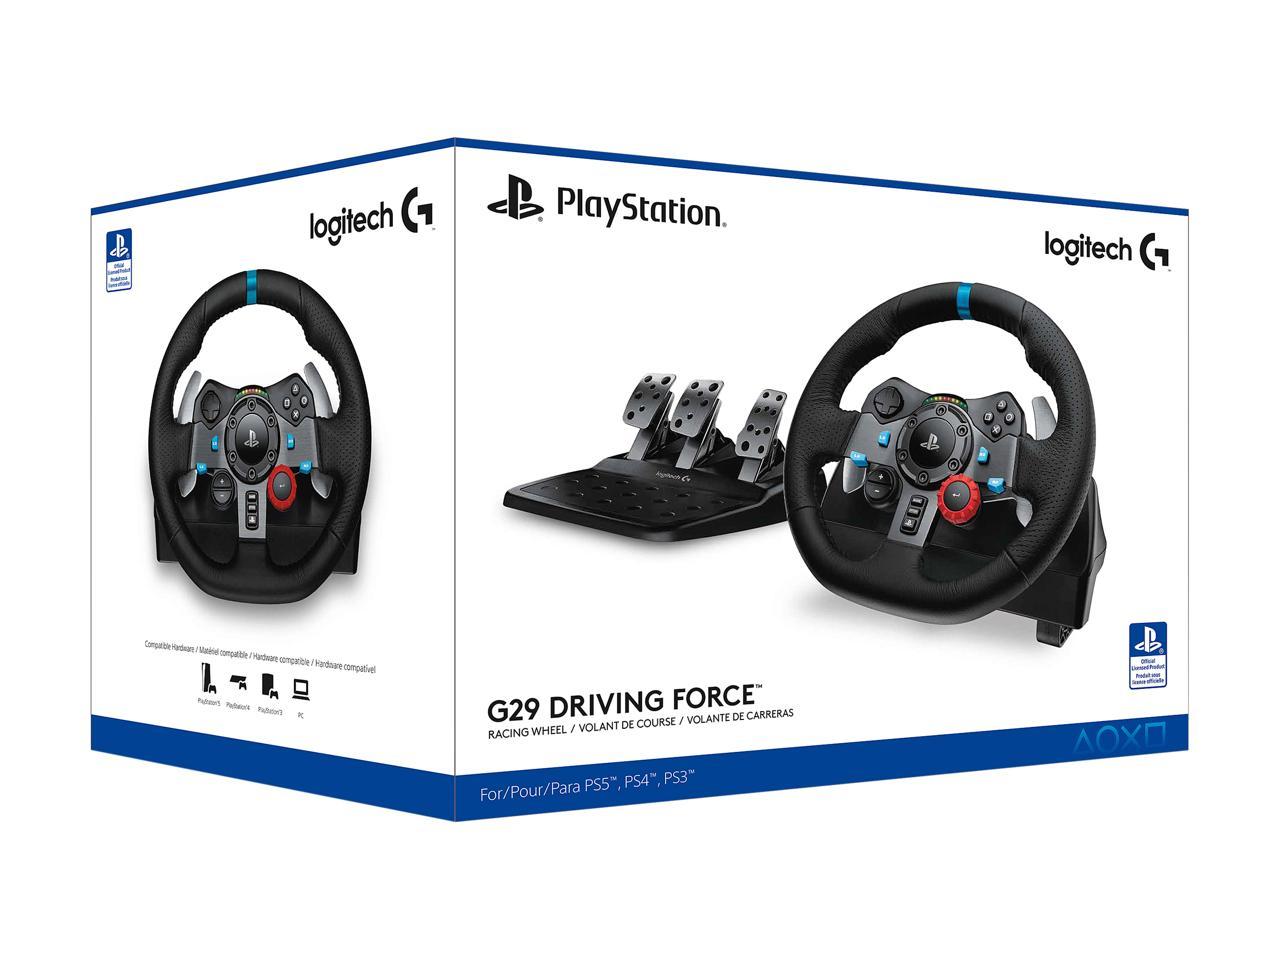 Volante Driving Force G29 PS3 PS4 - Logitech com o Melhor Preço é